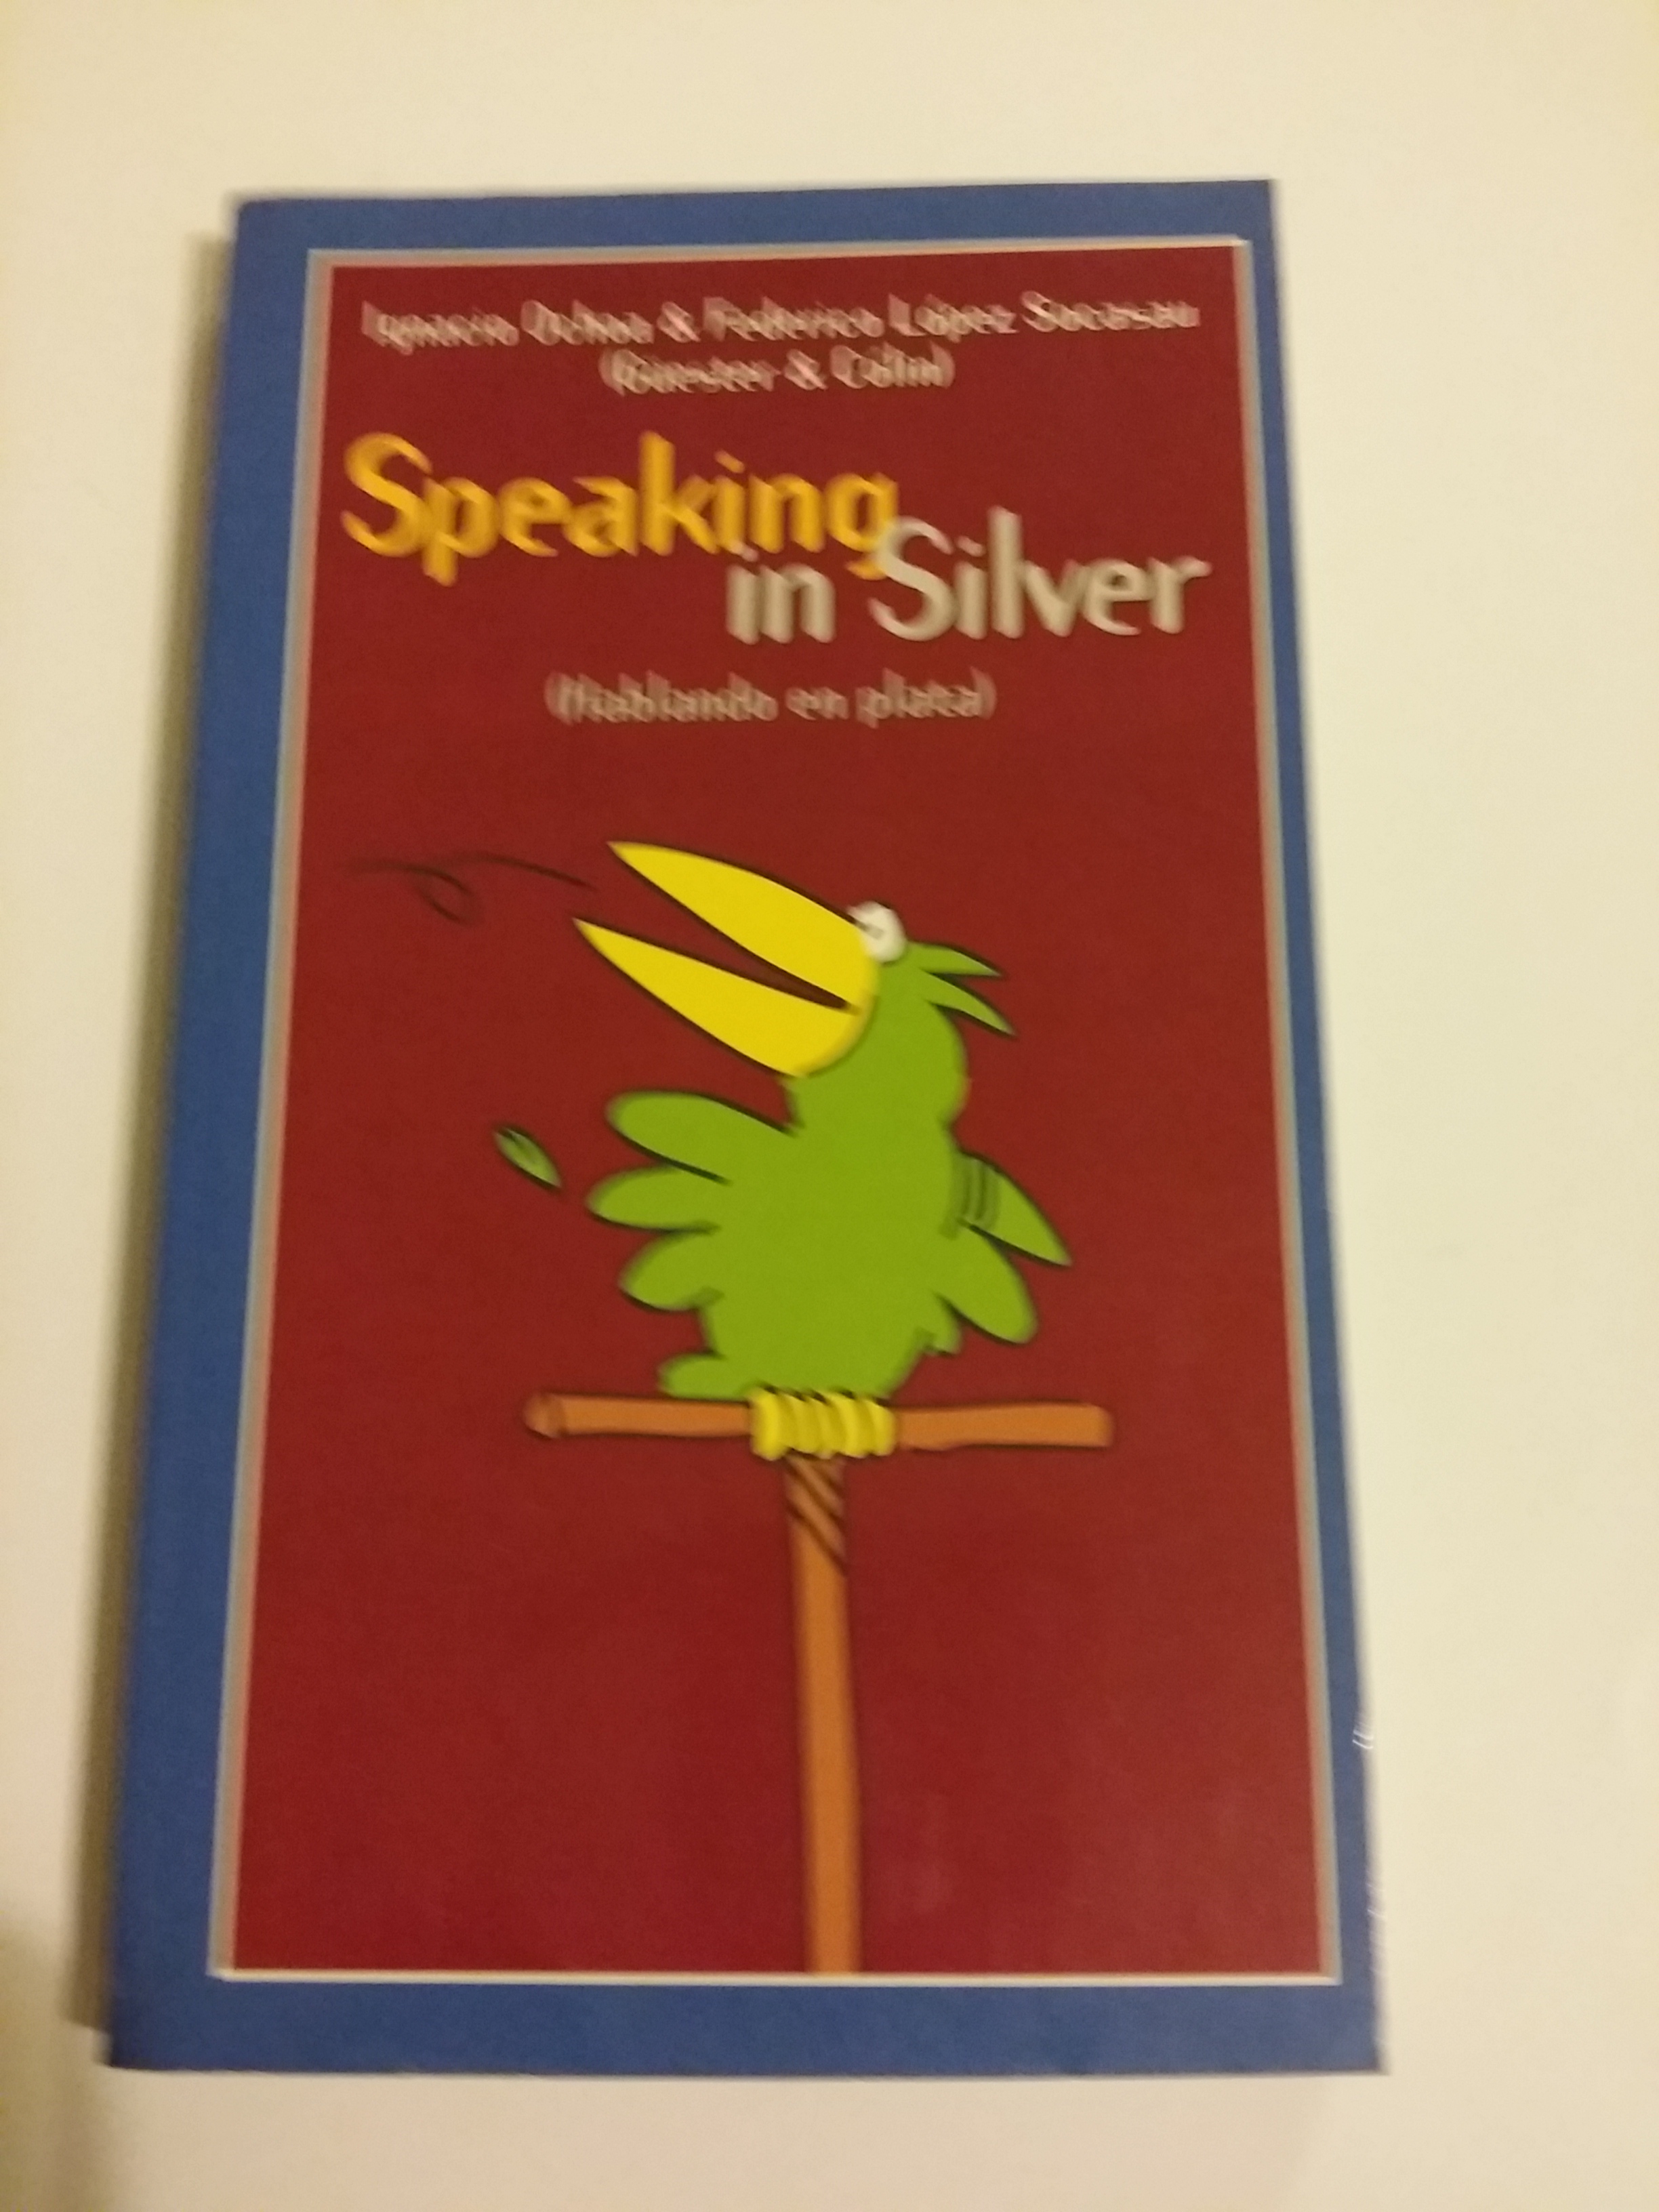 Speaking in silver